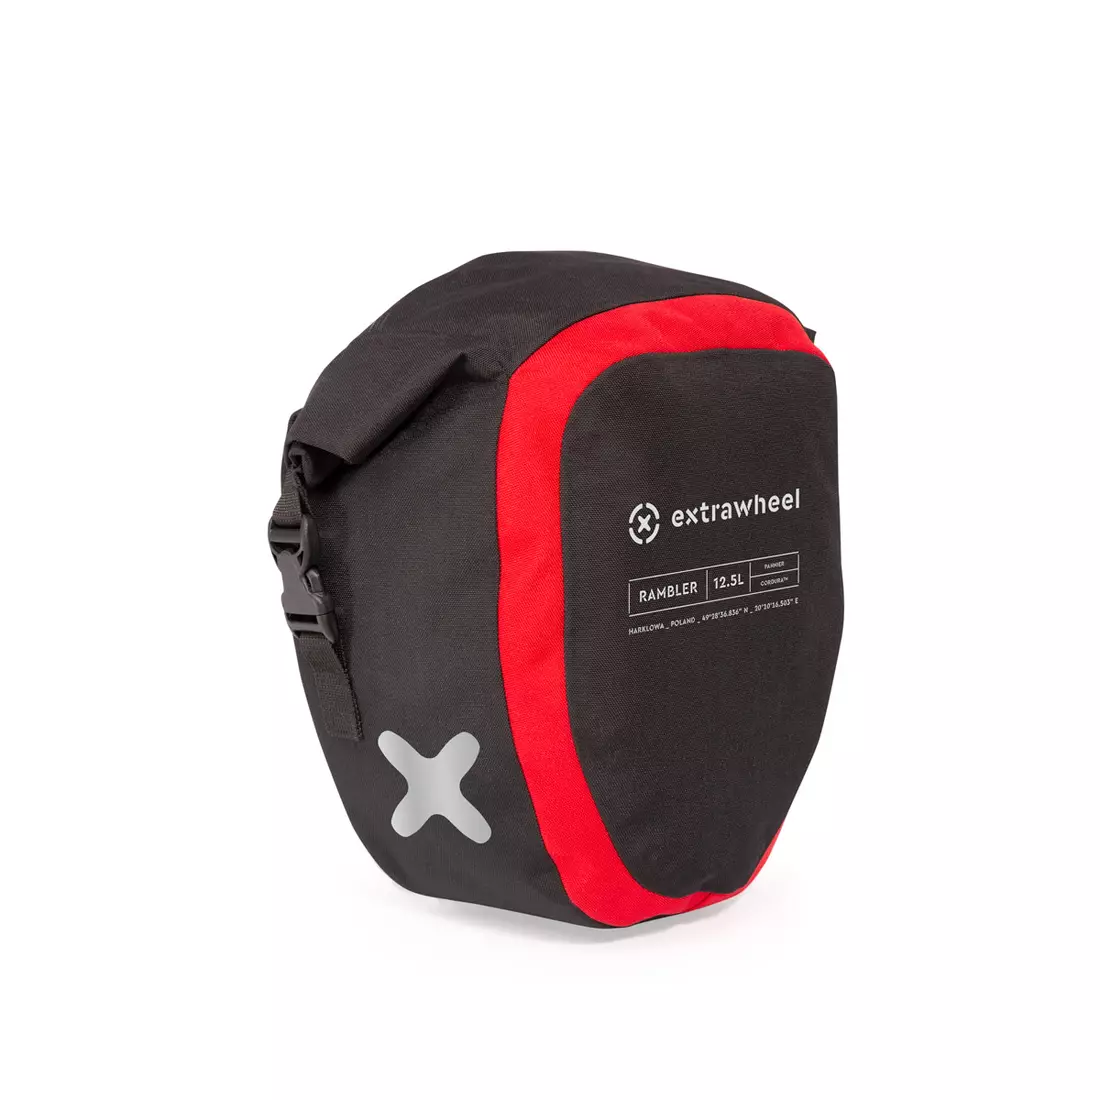 EXTRAWHEEL univerzális táskák kerékpárokhoz rambler black/red 2x12,5L premium cordura E0047